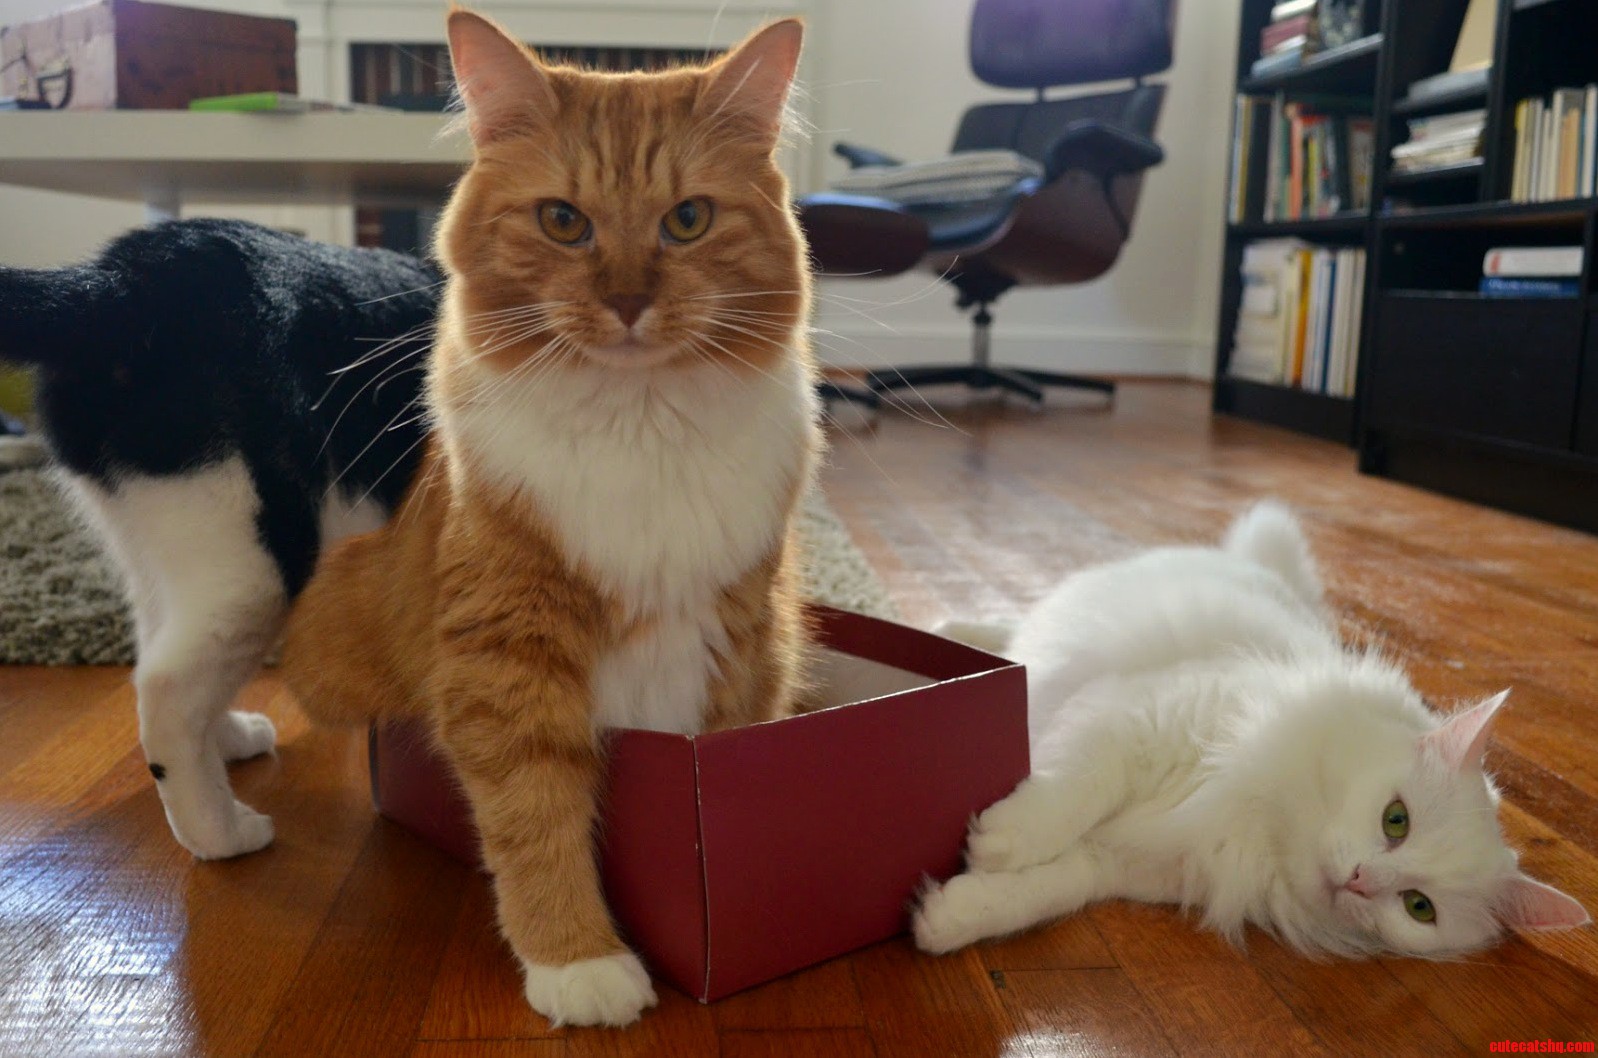 Their favorite box.